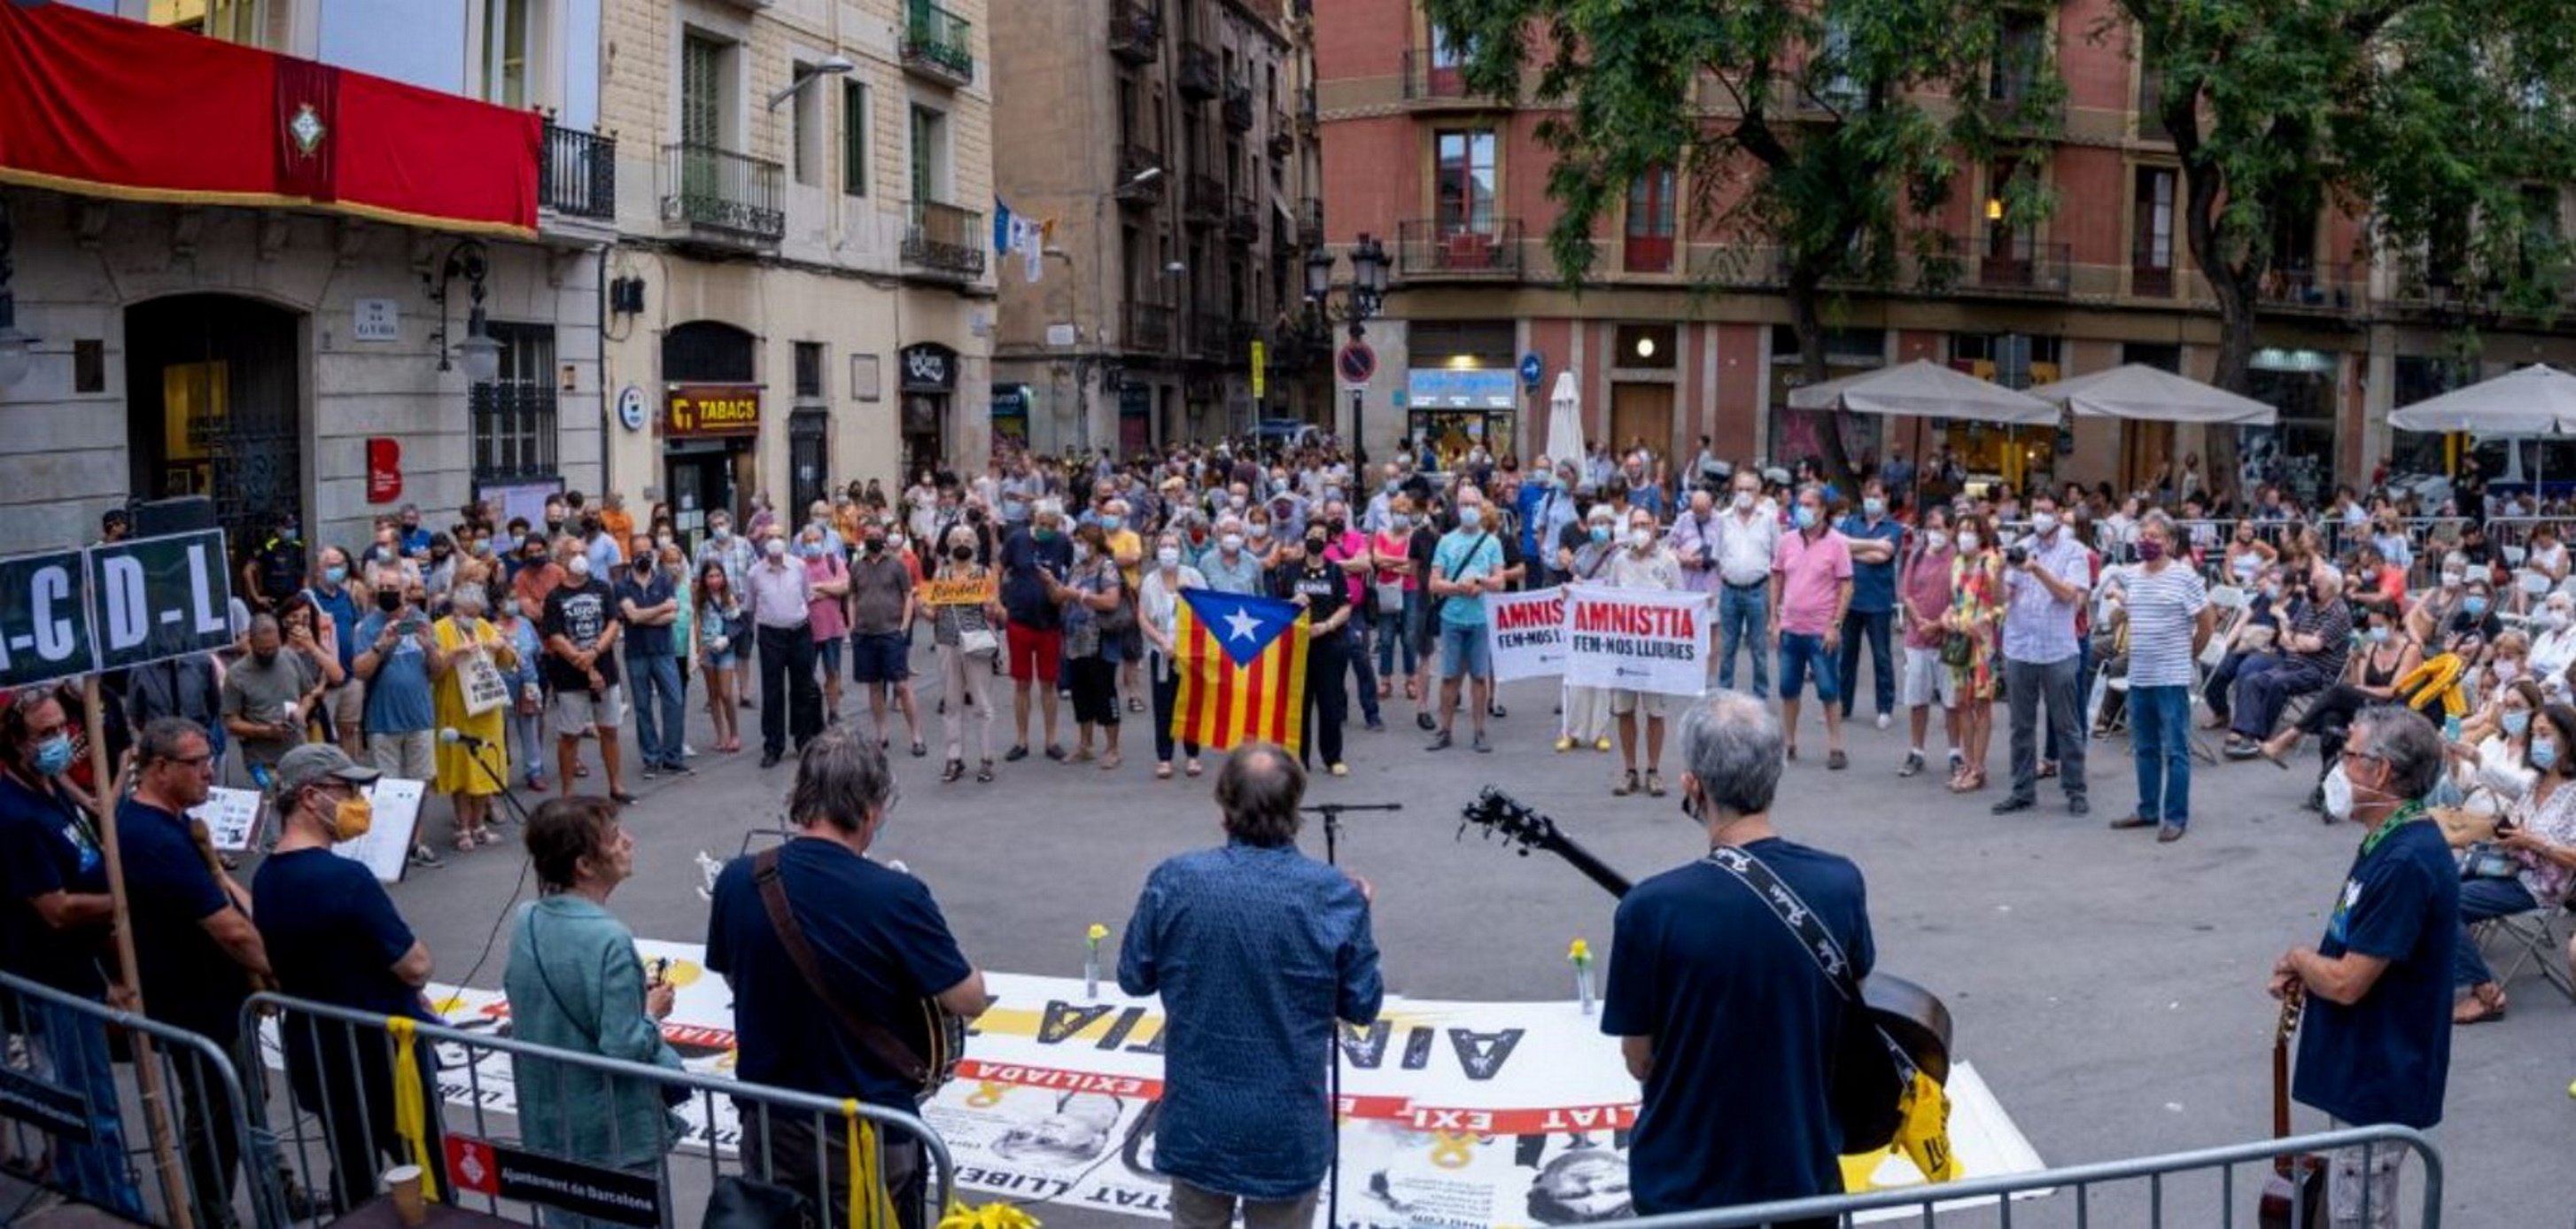 Siguen las críticas a Colau en Gràcia: "Cada uno recoge lo que siembra"